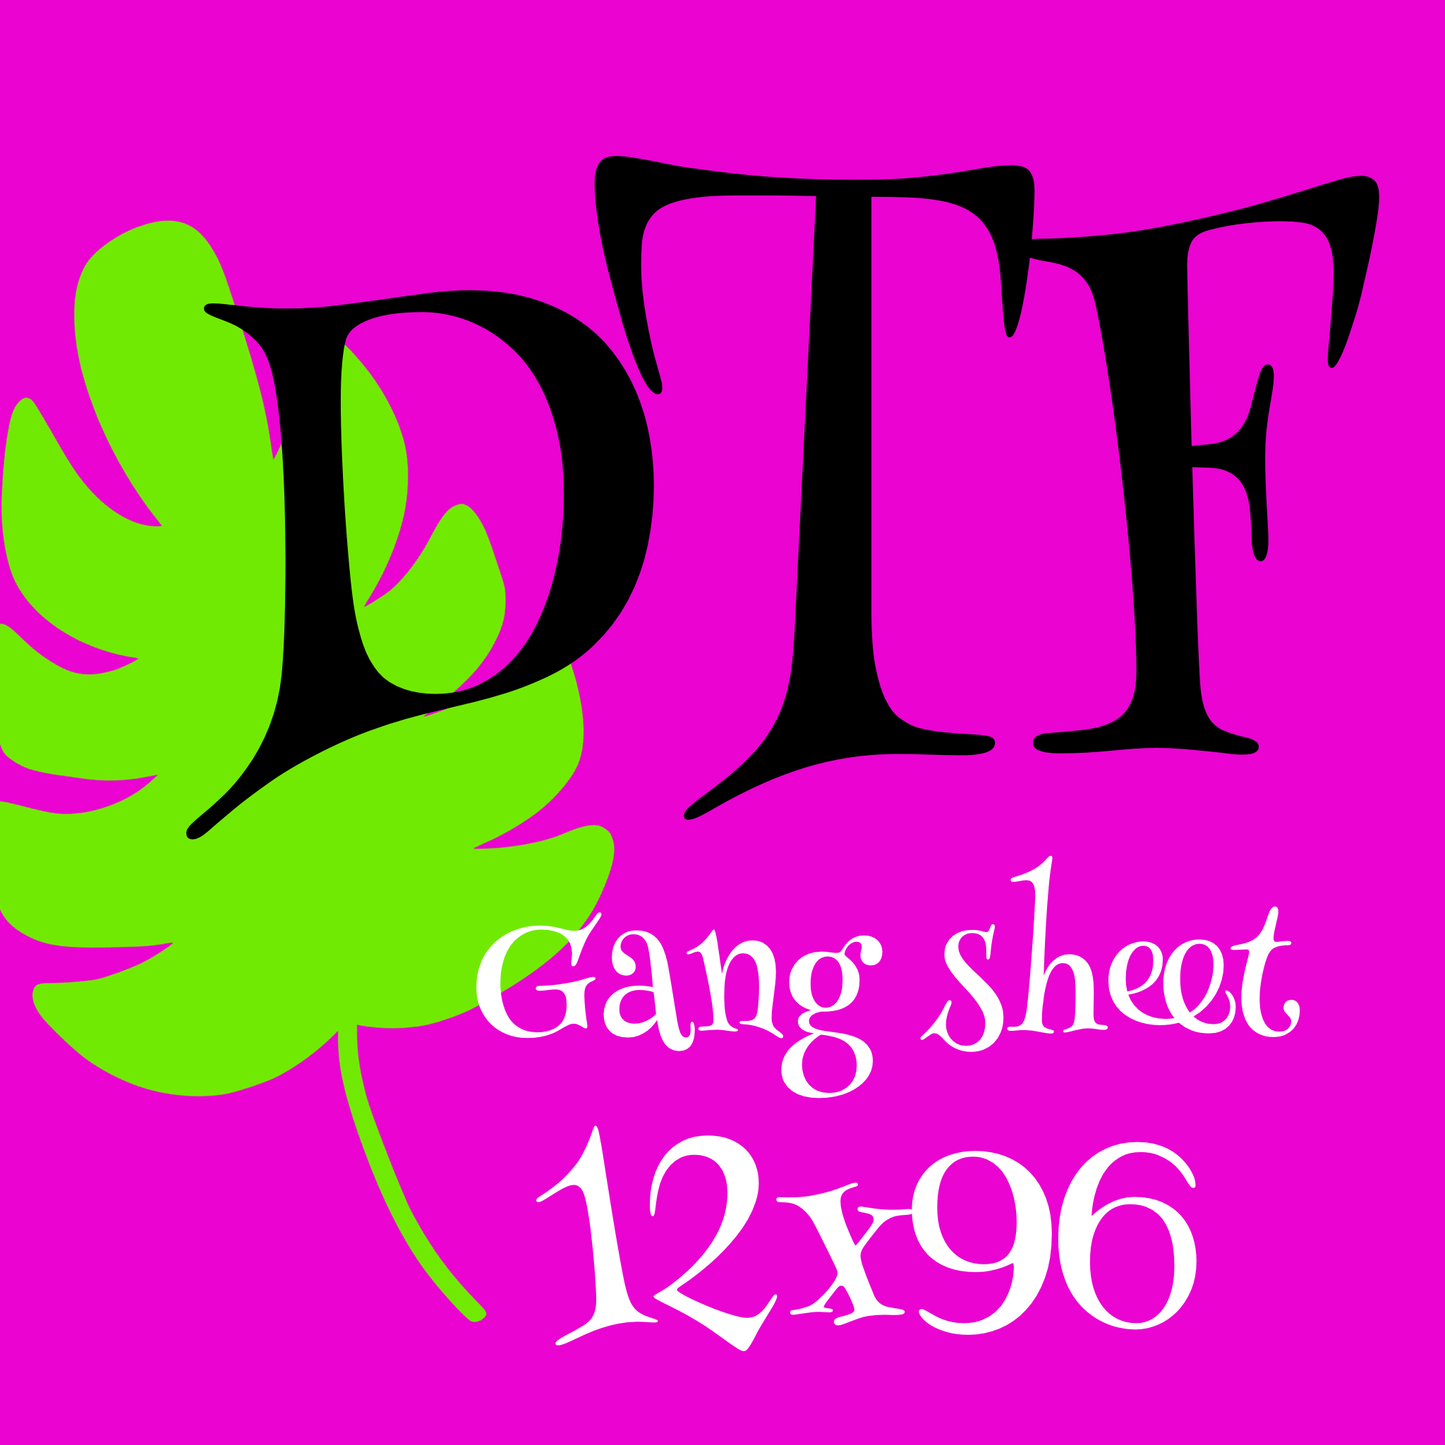 12 x 96 Gang Sheet